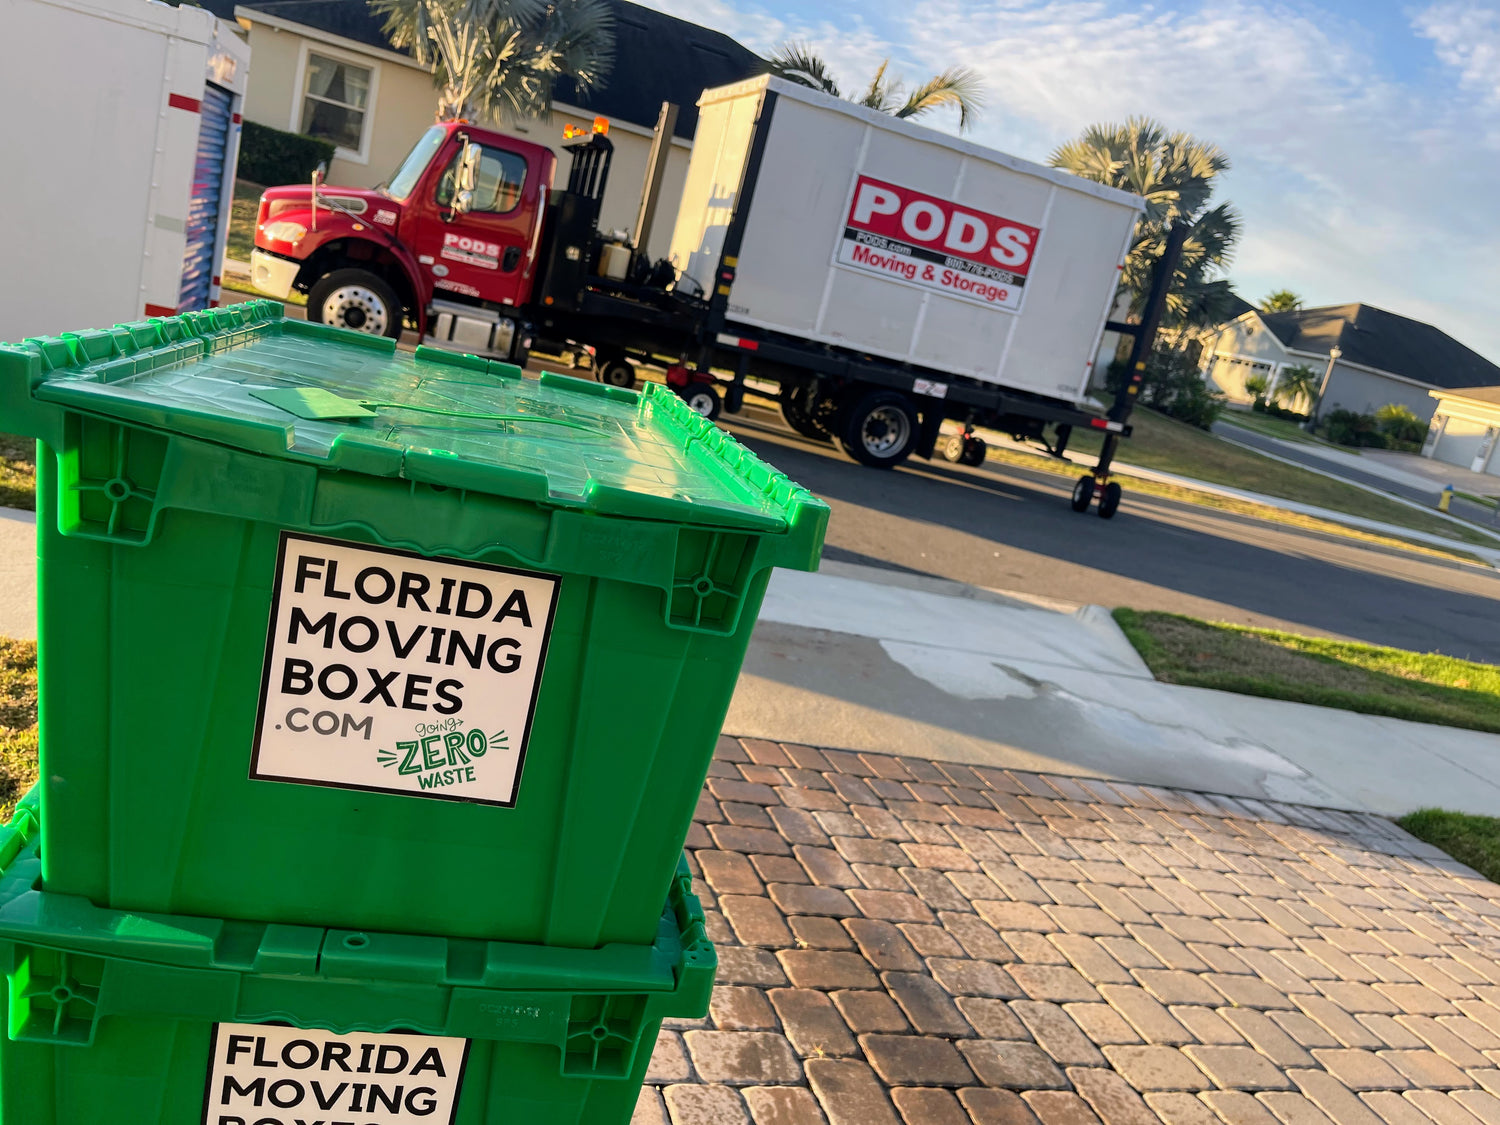 https://floridamovingboxes.com/cdn/shop/files/Florida_Moving_Boxes_in_PODS_Orlando_1500x.jpg?v=1682506676